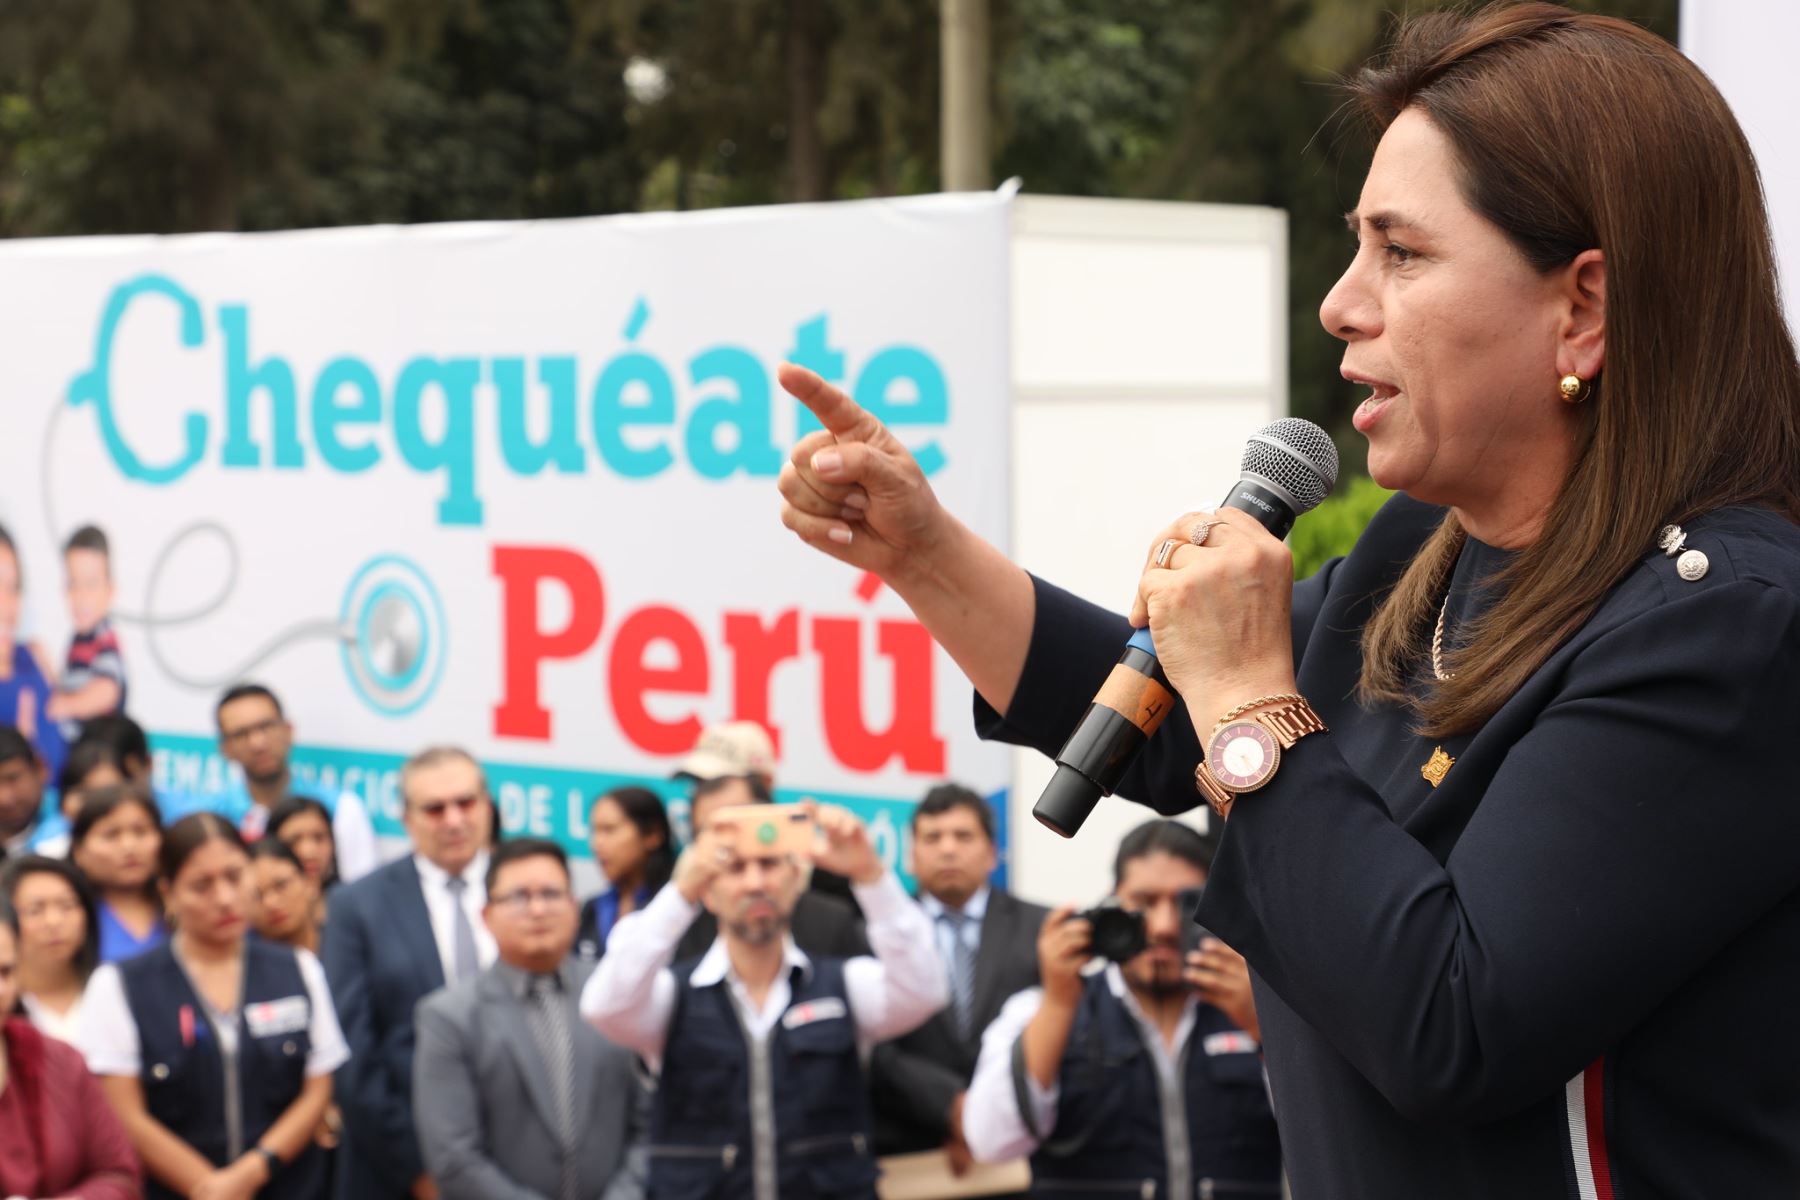 El Ministerio de Salud (Minsa) brindó un total de 7 424 824 de atenciones durante la Semana Nacional de la Prevención “Chequéate Perú”, cifra que supera la meta establecida para la jornada que se realizó desde el pasado lunes 15 y culminó el domingo 21 de mayo último.
Foto: ANDINA/MINSA